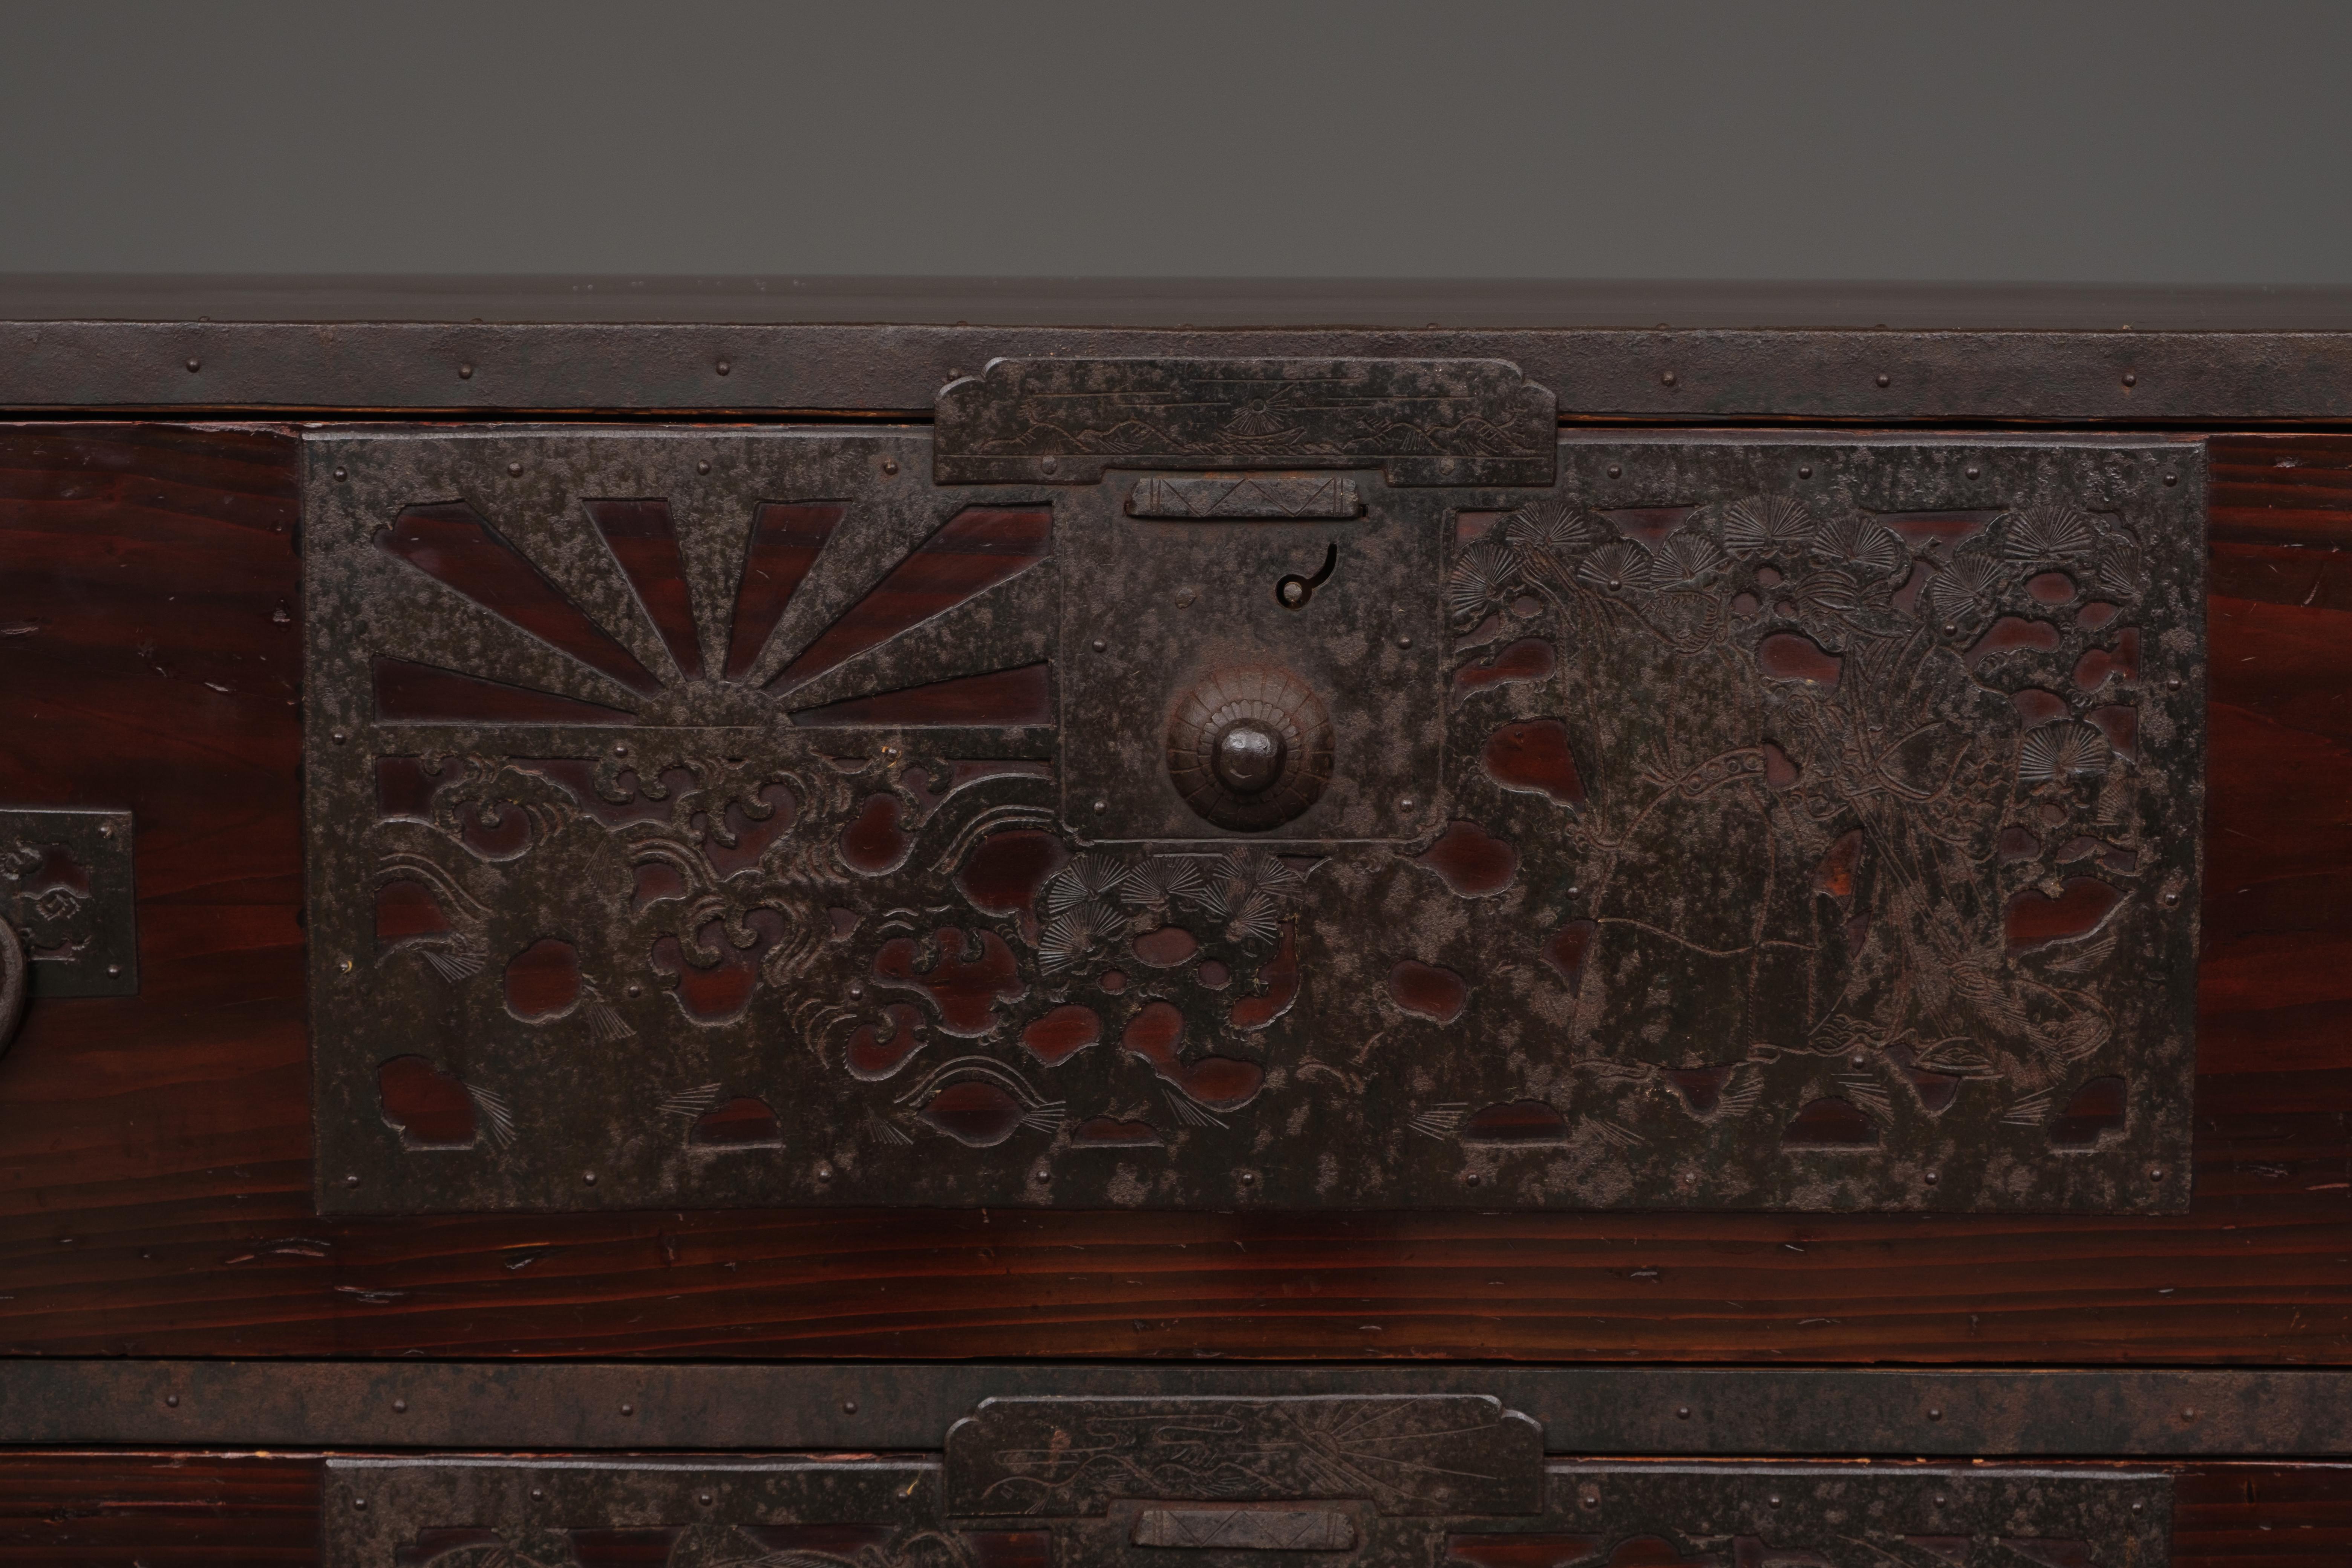 Hochwertiger Ishô'dansu (Schubladenschrank) aus Sado-Holz in zwei Teilen. Stark verkleidet mit dekorativen Eisenbeschlägen mit reichem Design und einem kleinen Geheimnis. Vollständig restauriert, gereinigt und gewachst.

Die Schubladenflächen sind